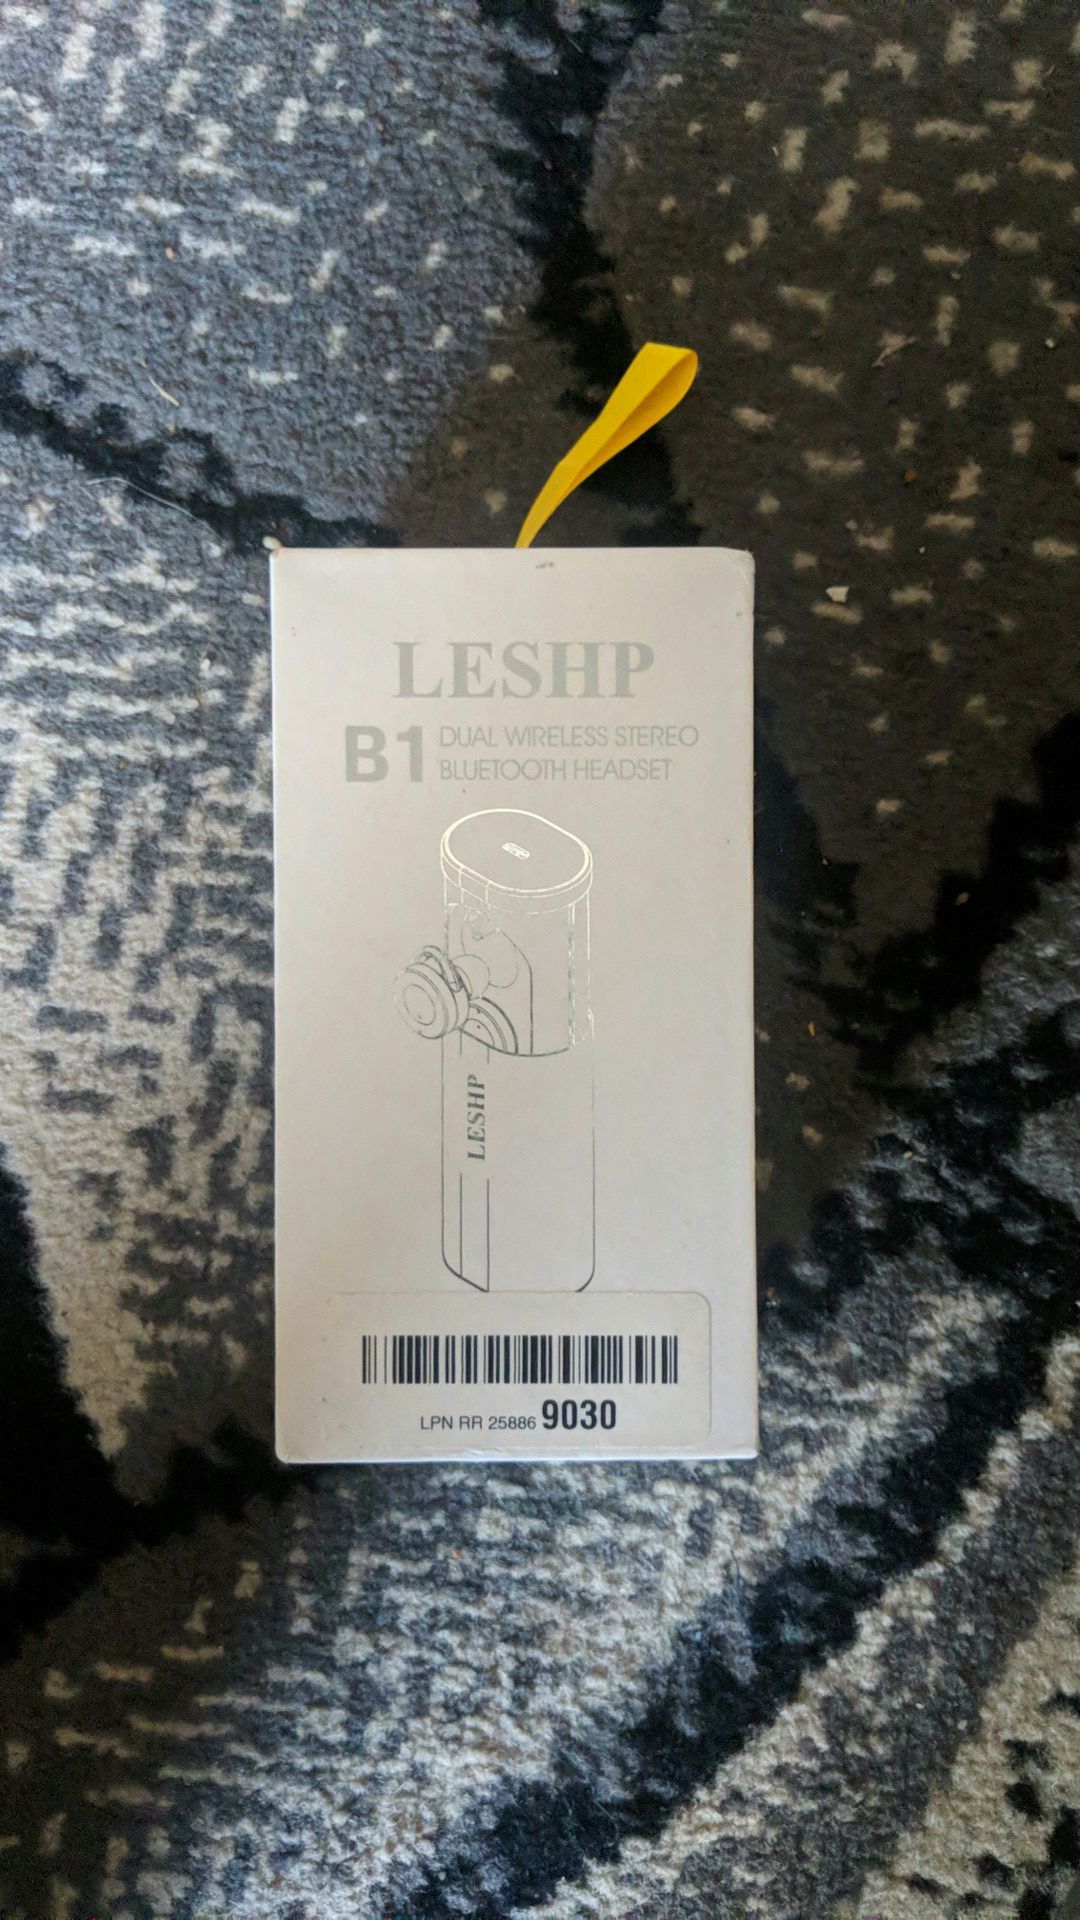 Leshp true wireless earphones